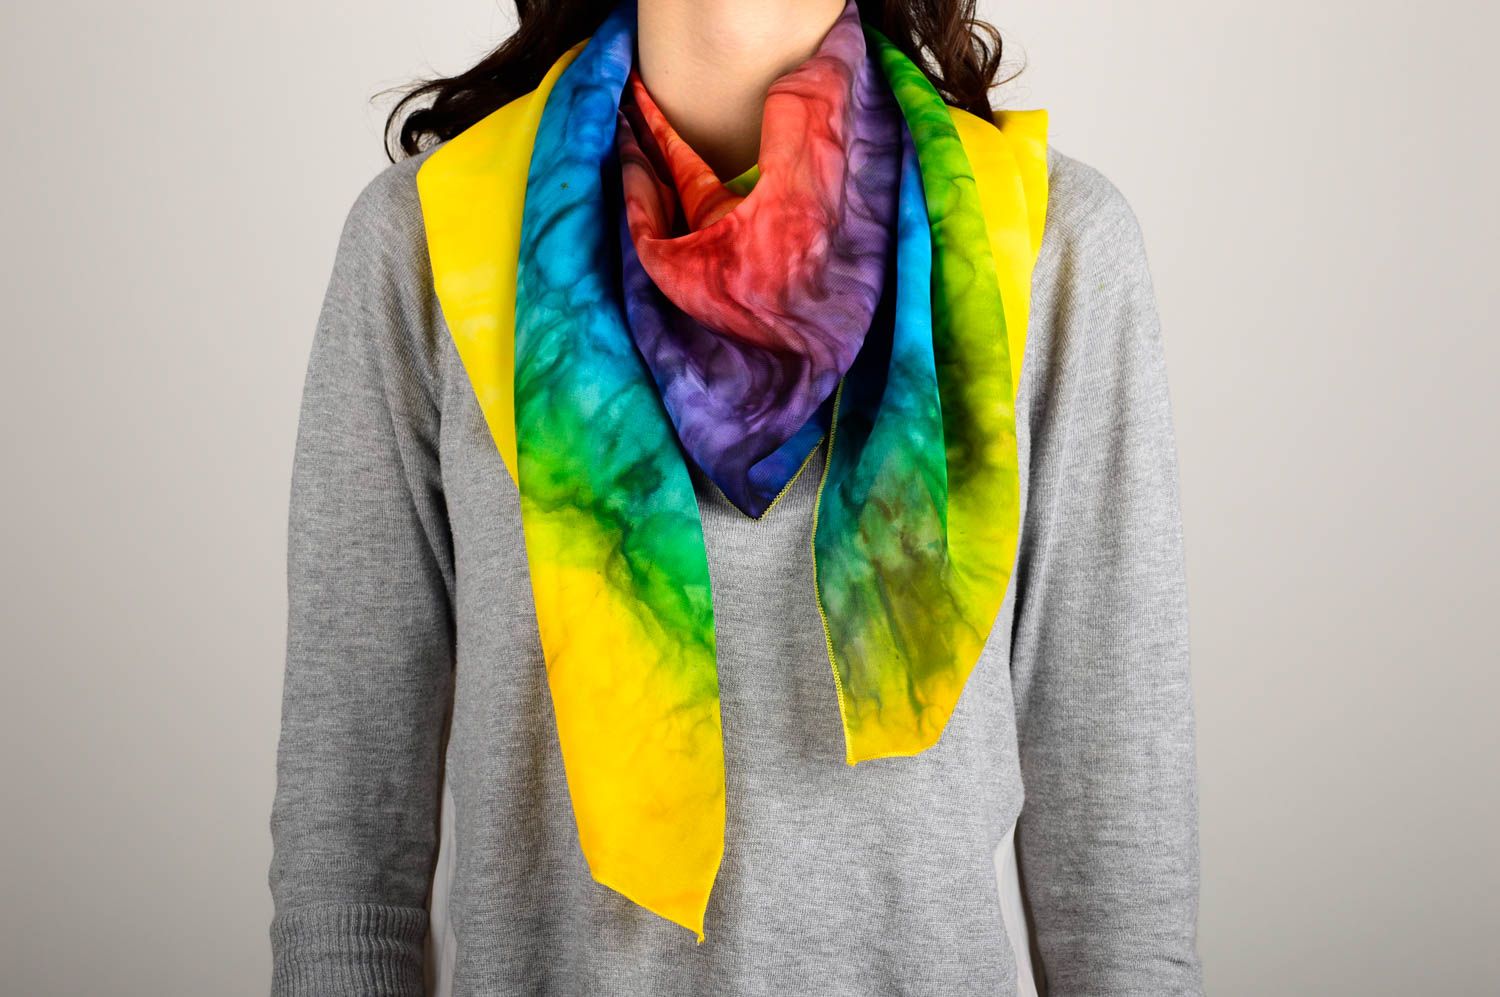 Шарф ручной работы женский шарф батик расписной шарф разноцветный красивый фото 1